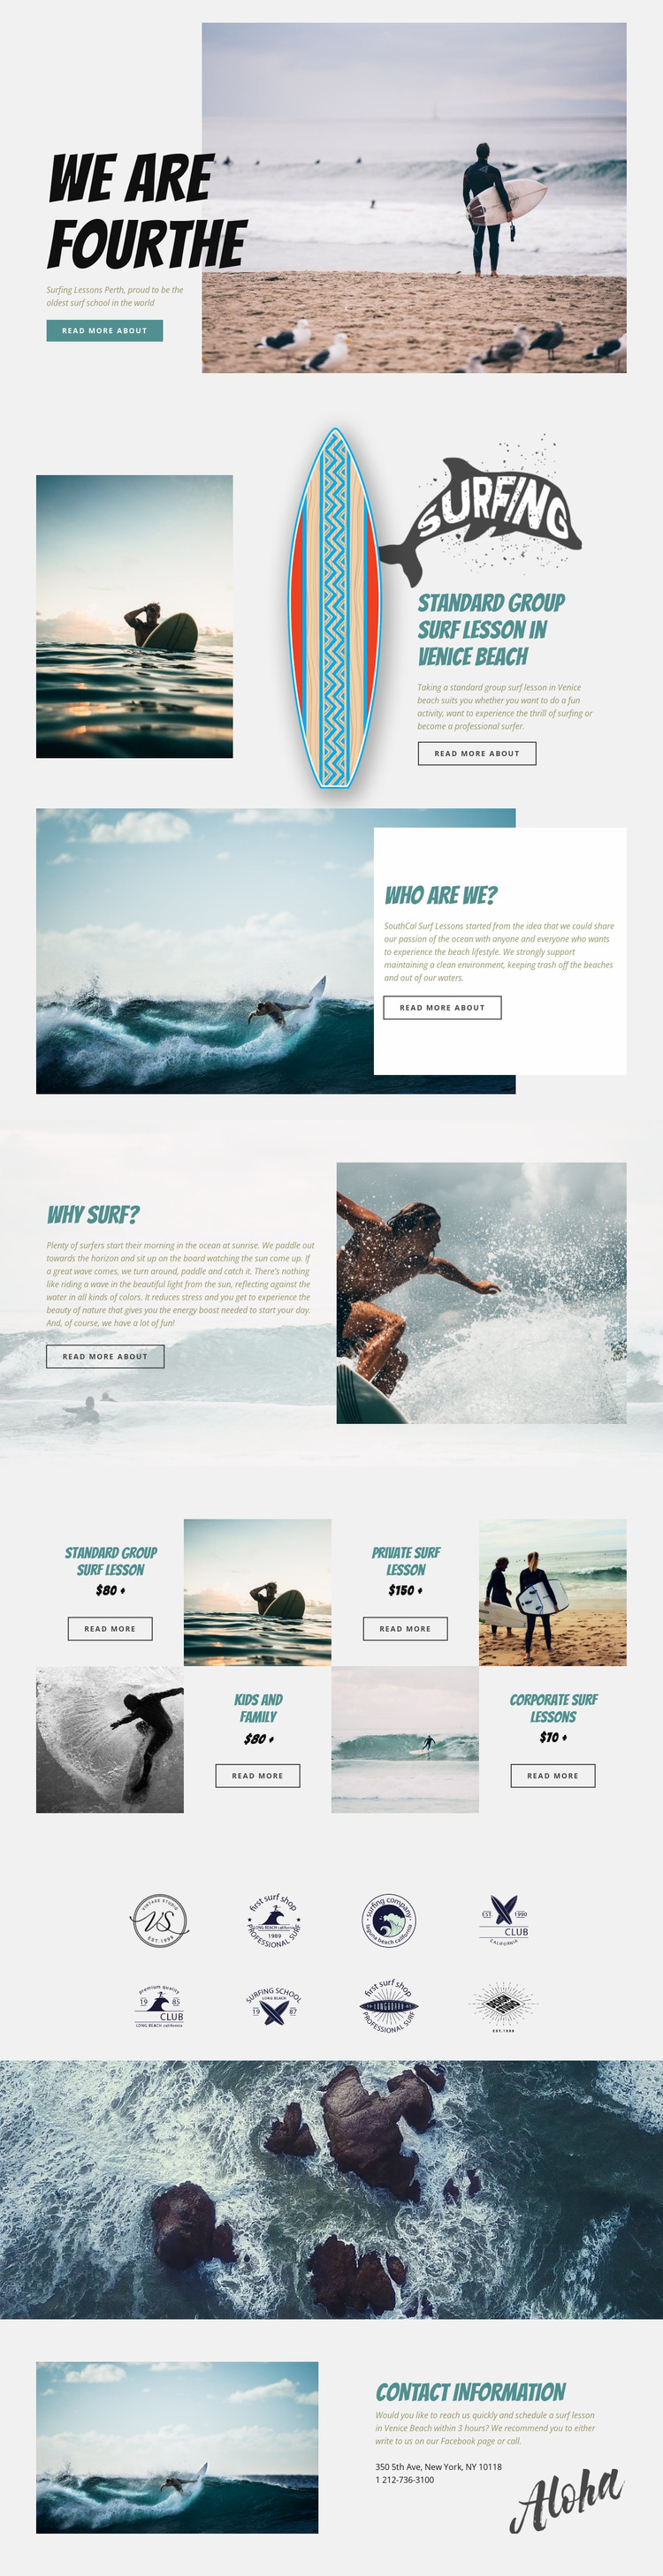 Surfing Website Design